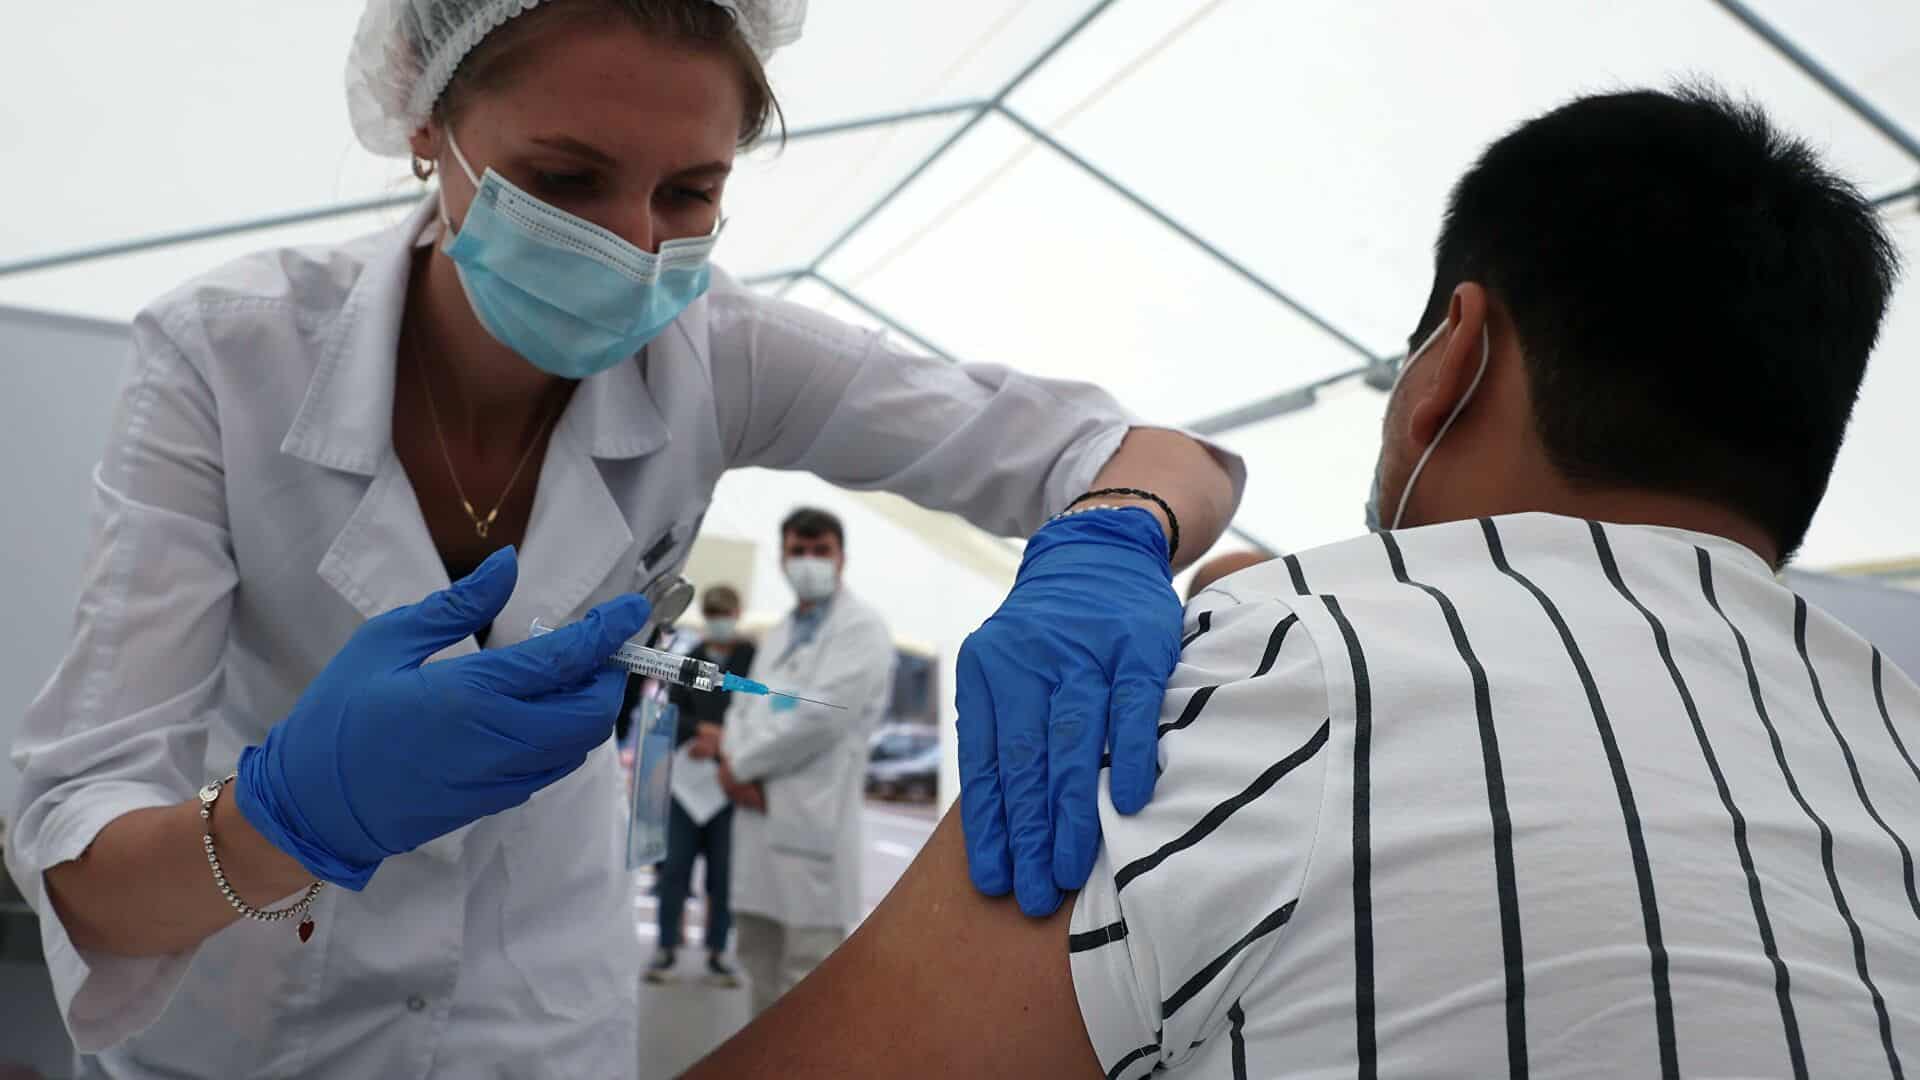 Басшылық вакцинадан бас тартқан қызметкерді жұмыстан шығаратын құқысы жоқ – министрлік